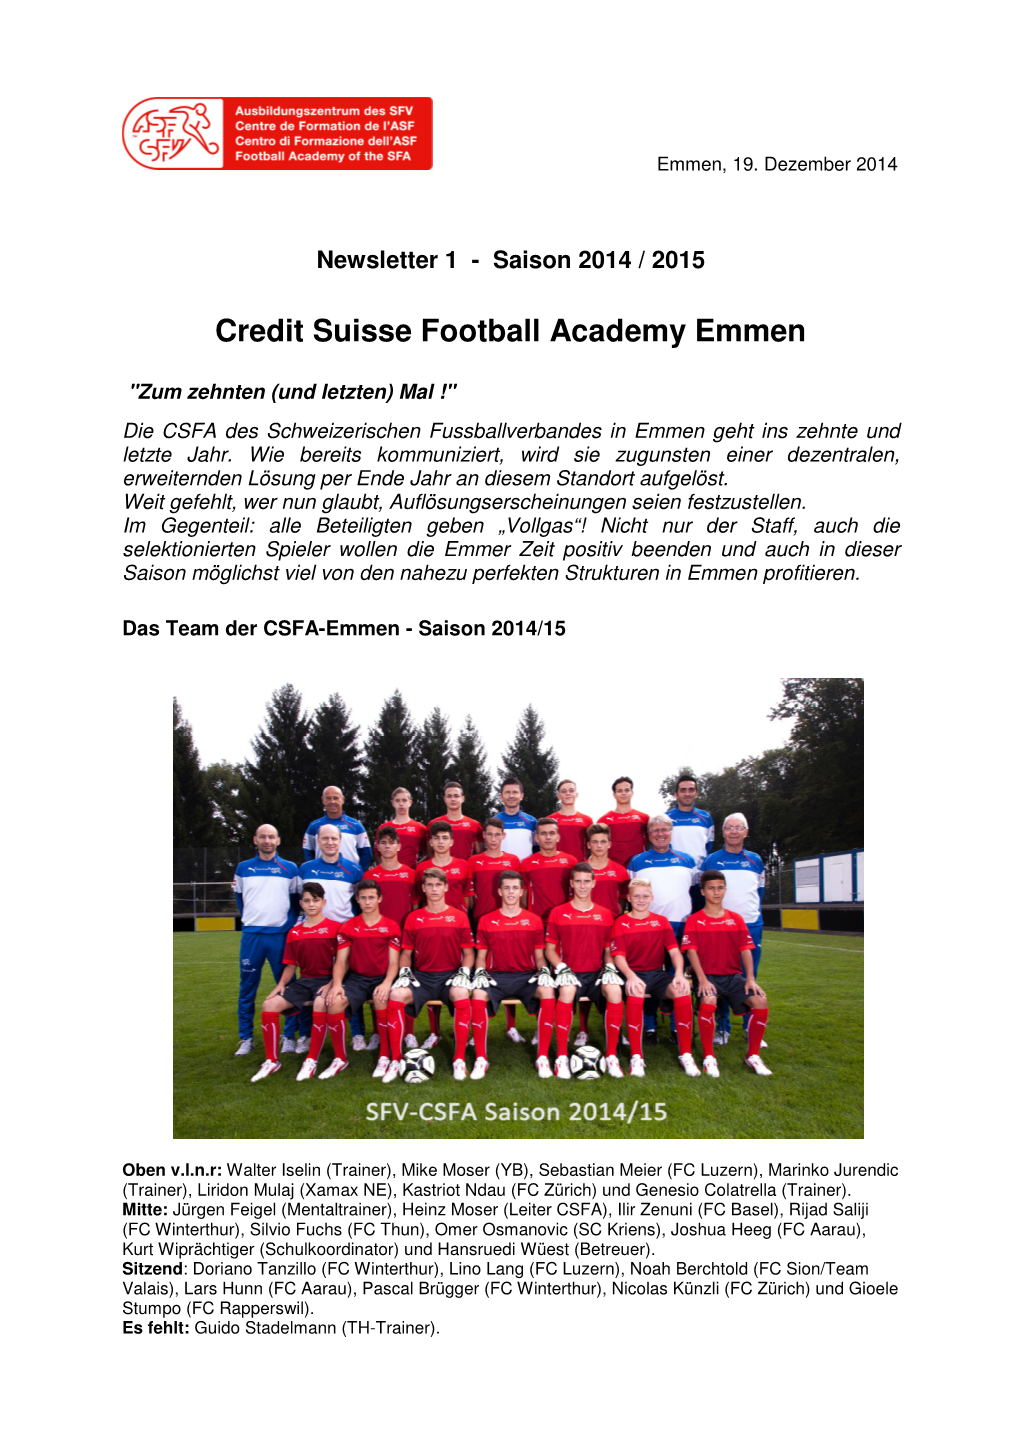 Newsletter Der CS Football Academy Emmen